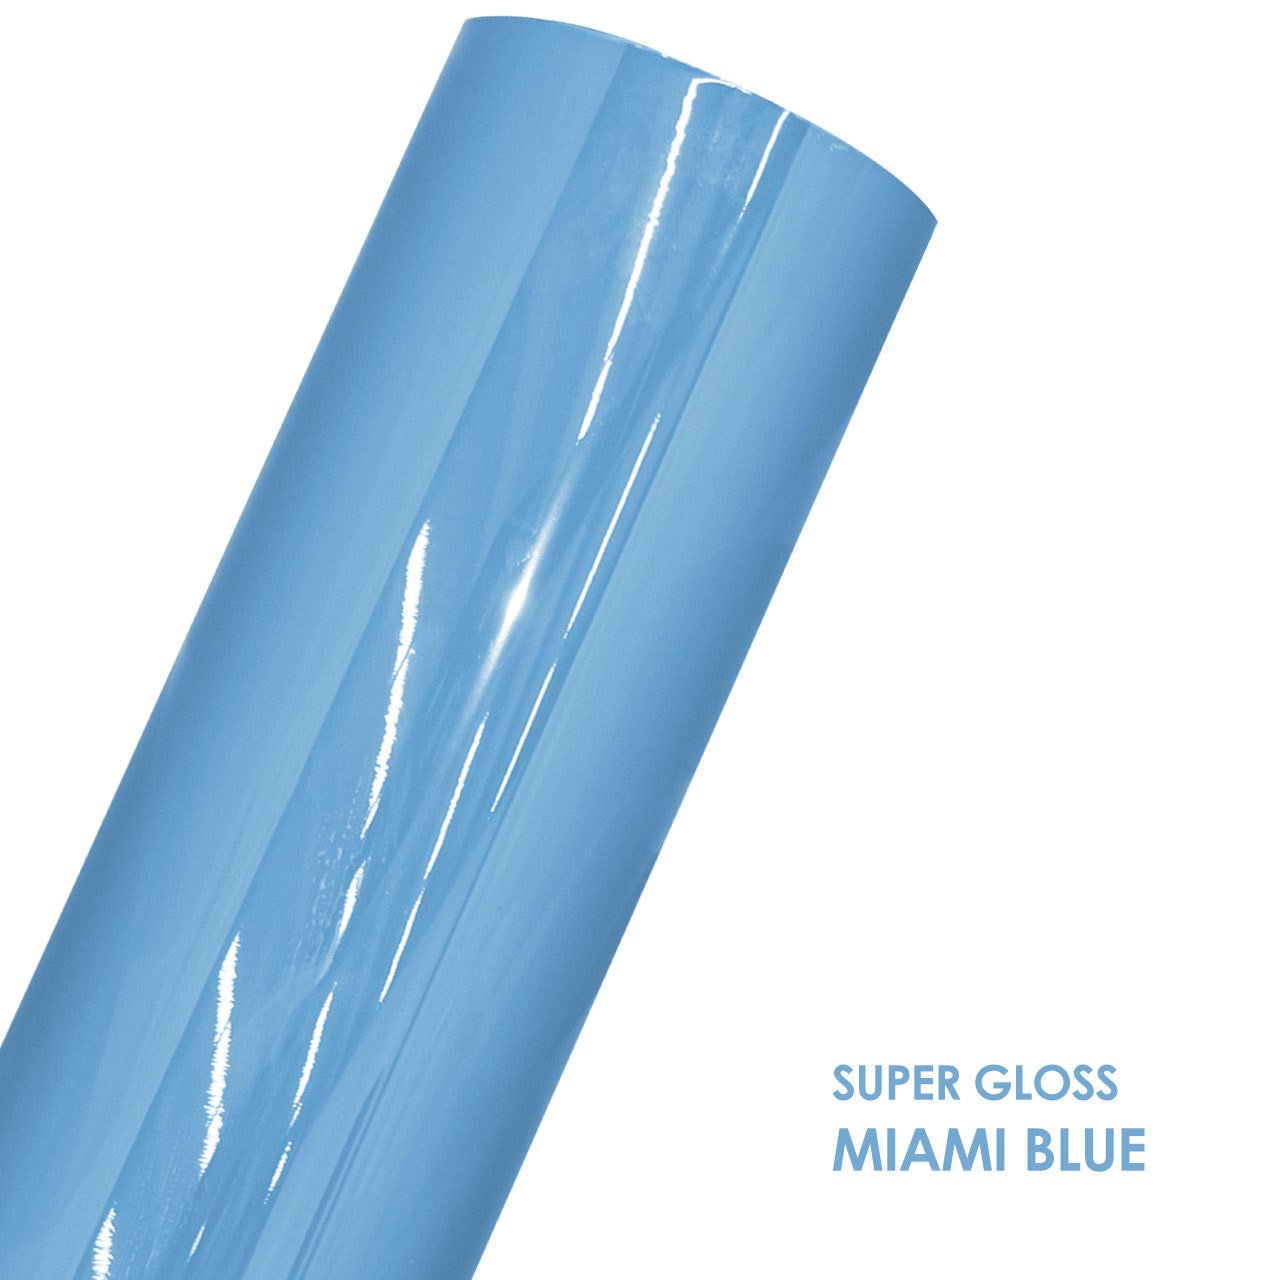 SUPER GLOSS MIAMI BLUE